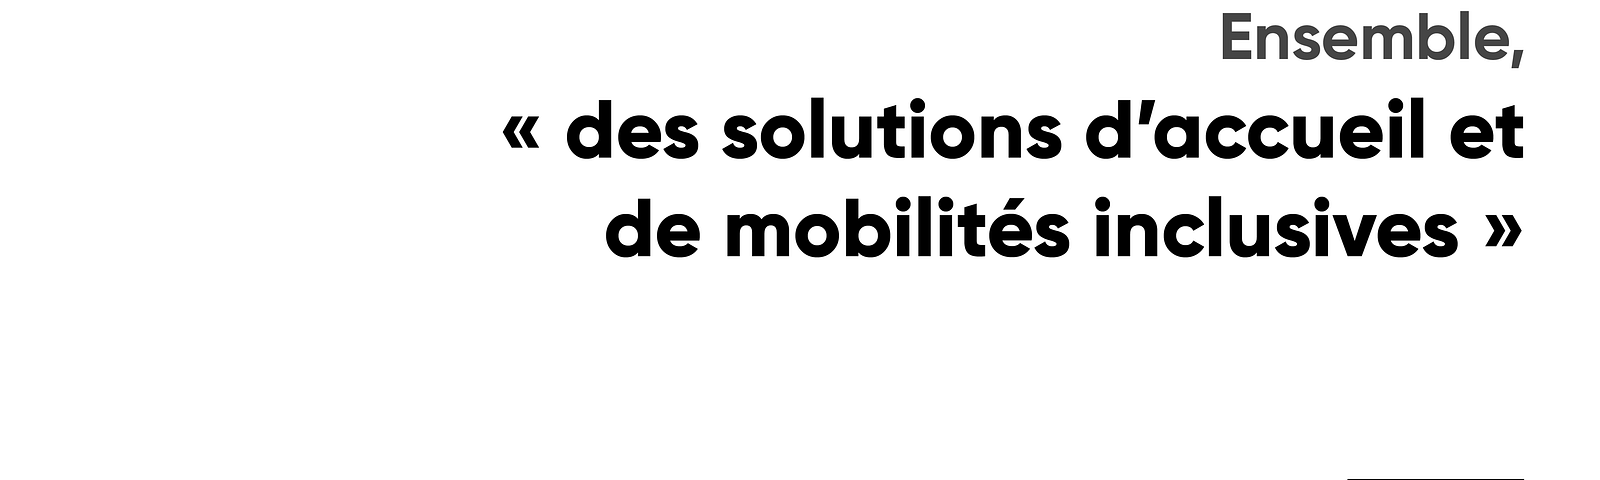 Ensemble, “des solutions d’accueil de mobilité inclusives”